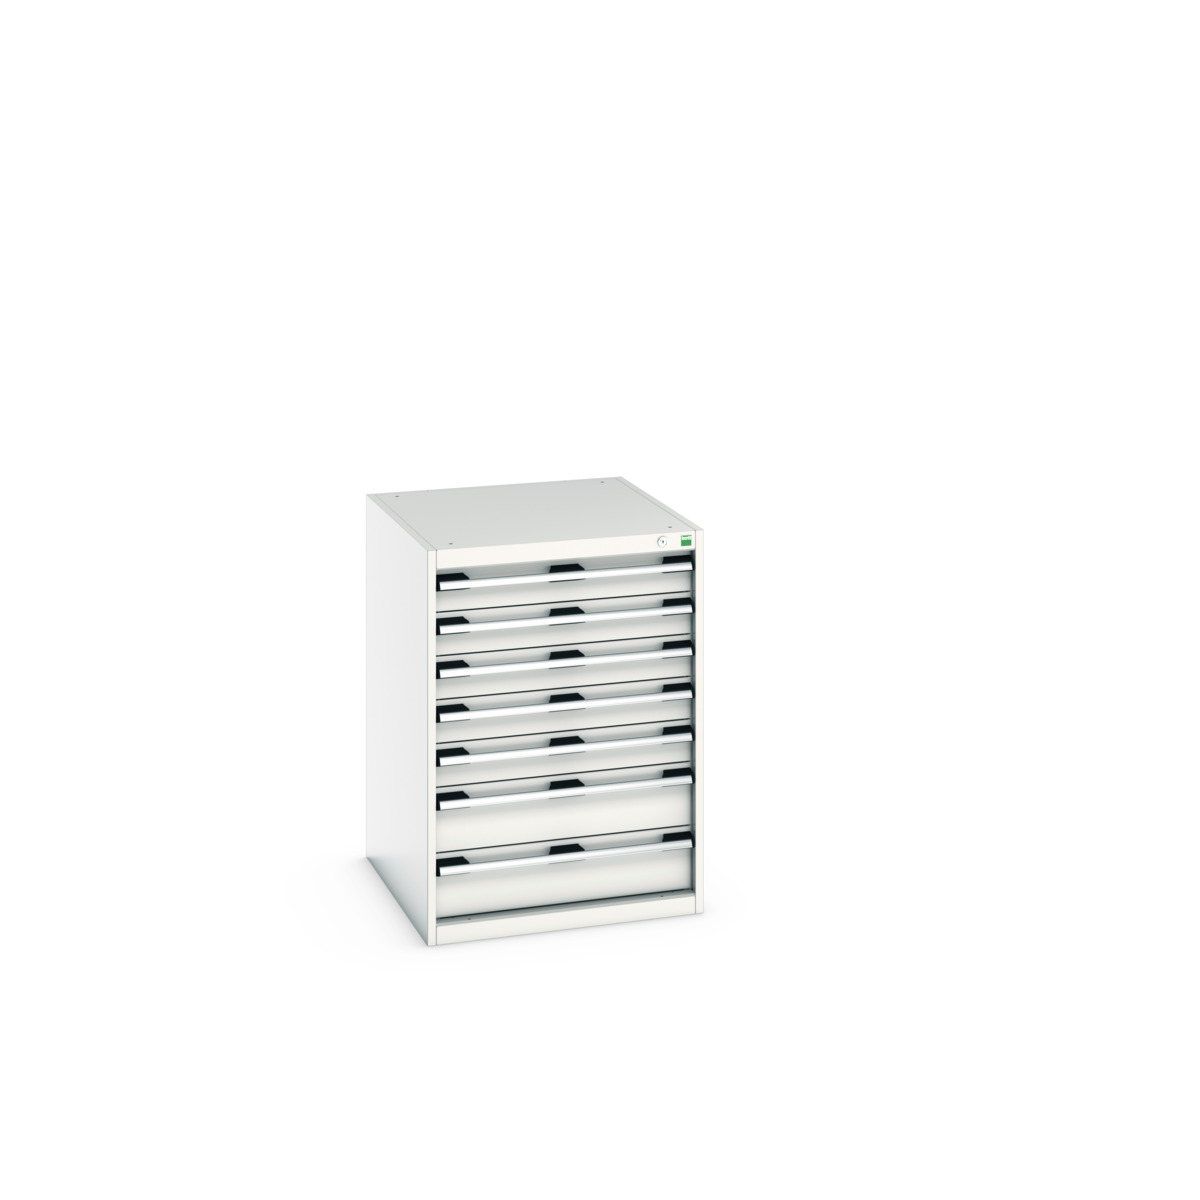 40027090.16V - cubio drawer cabinet